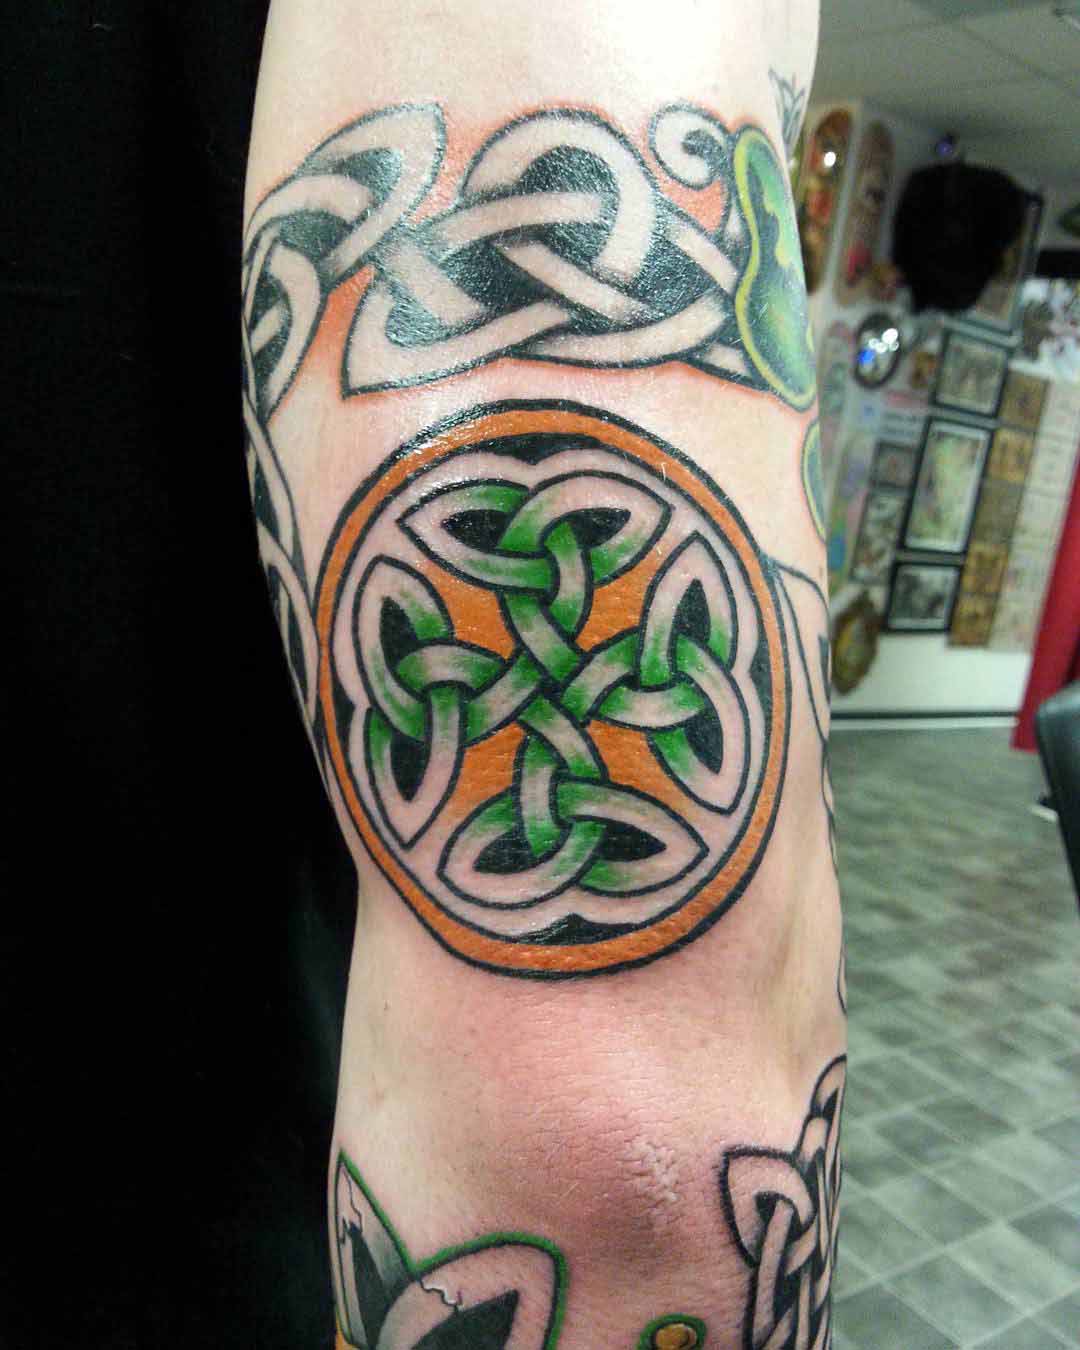 Carolingian Cross Tattoo on Back of Arm by tony666c